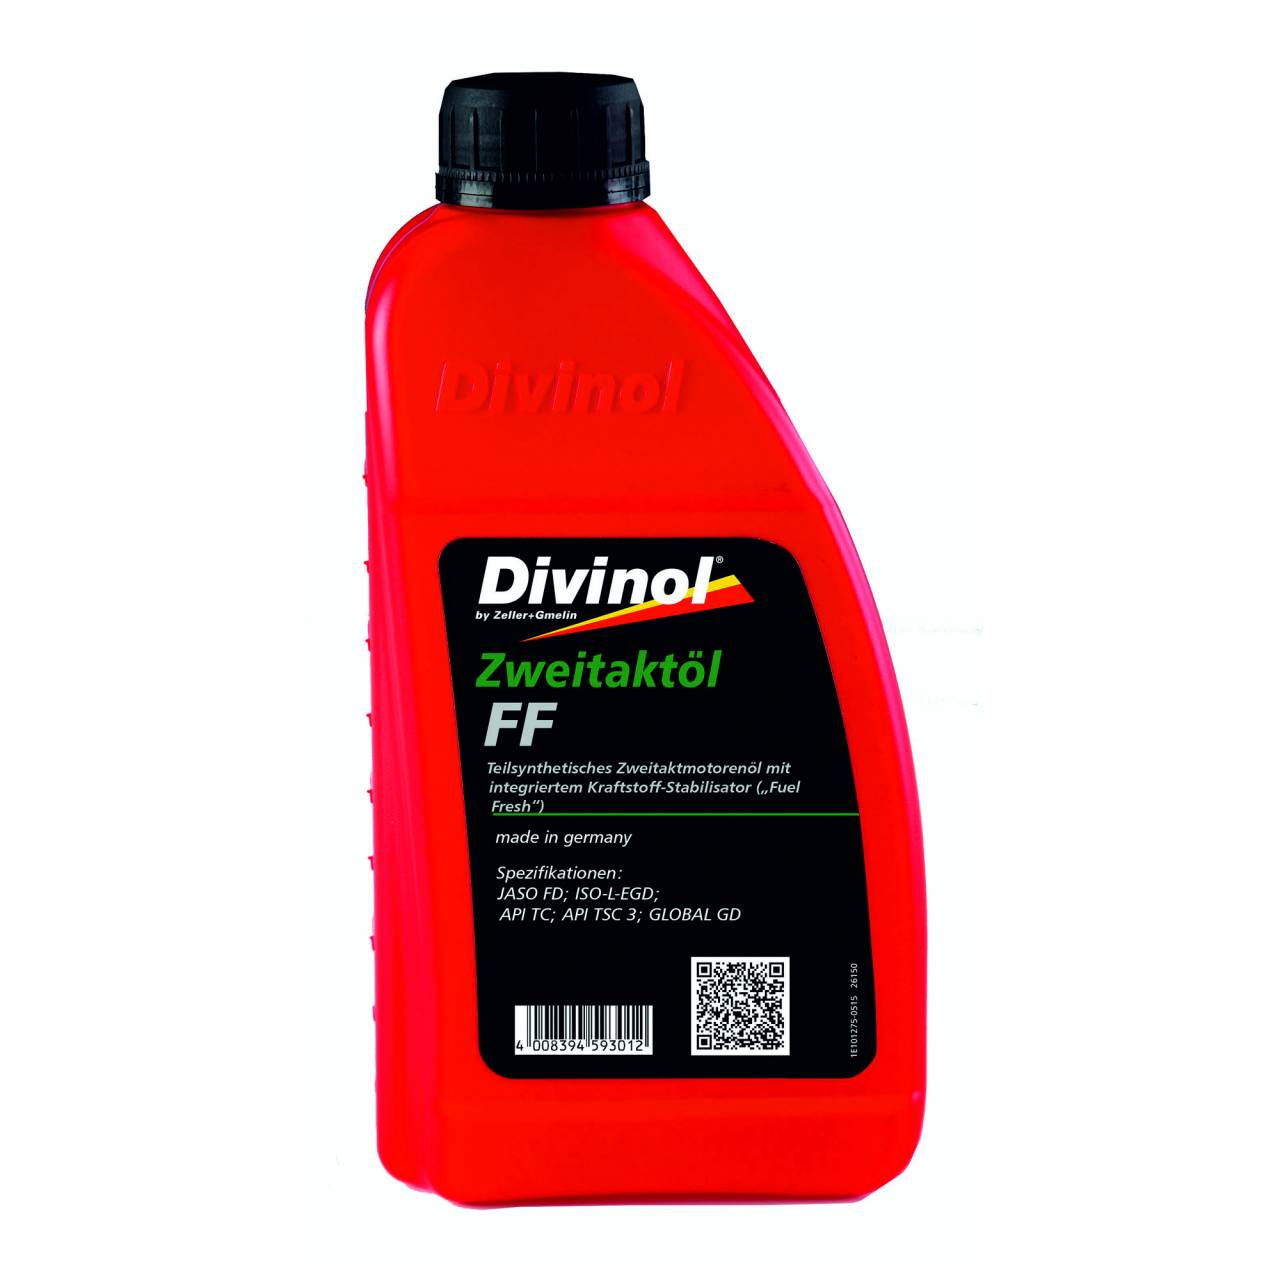 Zweitaktöl 'Divinol' FF / 1,0 Liter Flasche